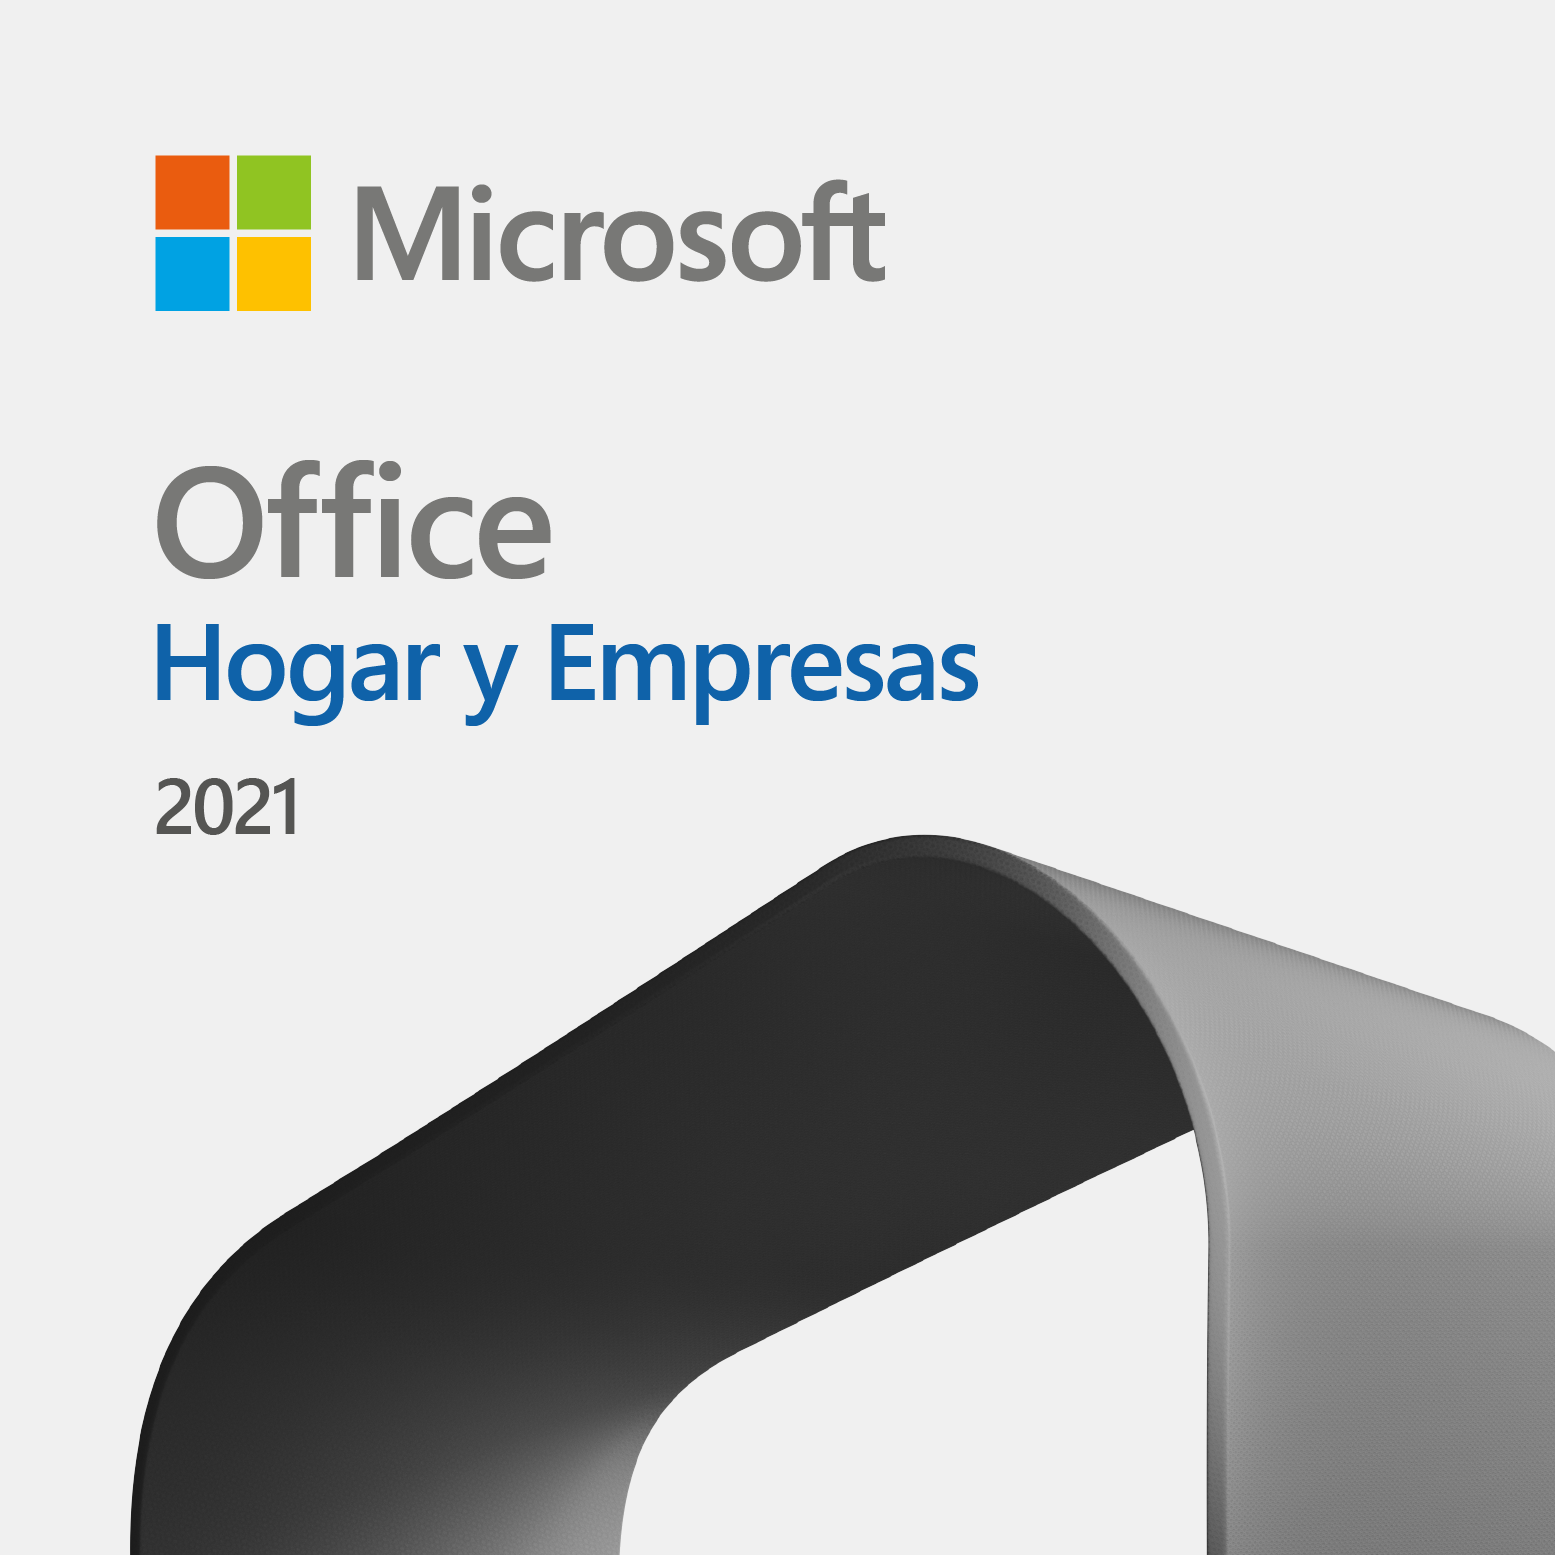 Compra Office Hogar y Empresas 2021 (PC o Mac): descarga y precios